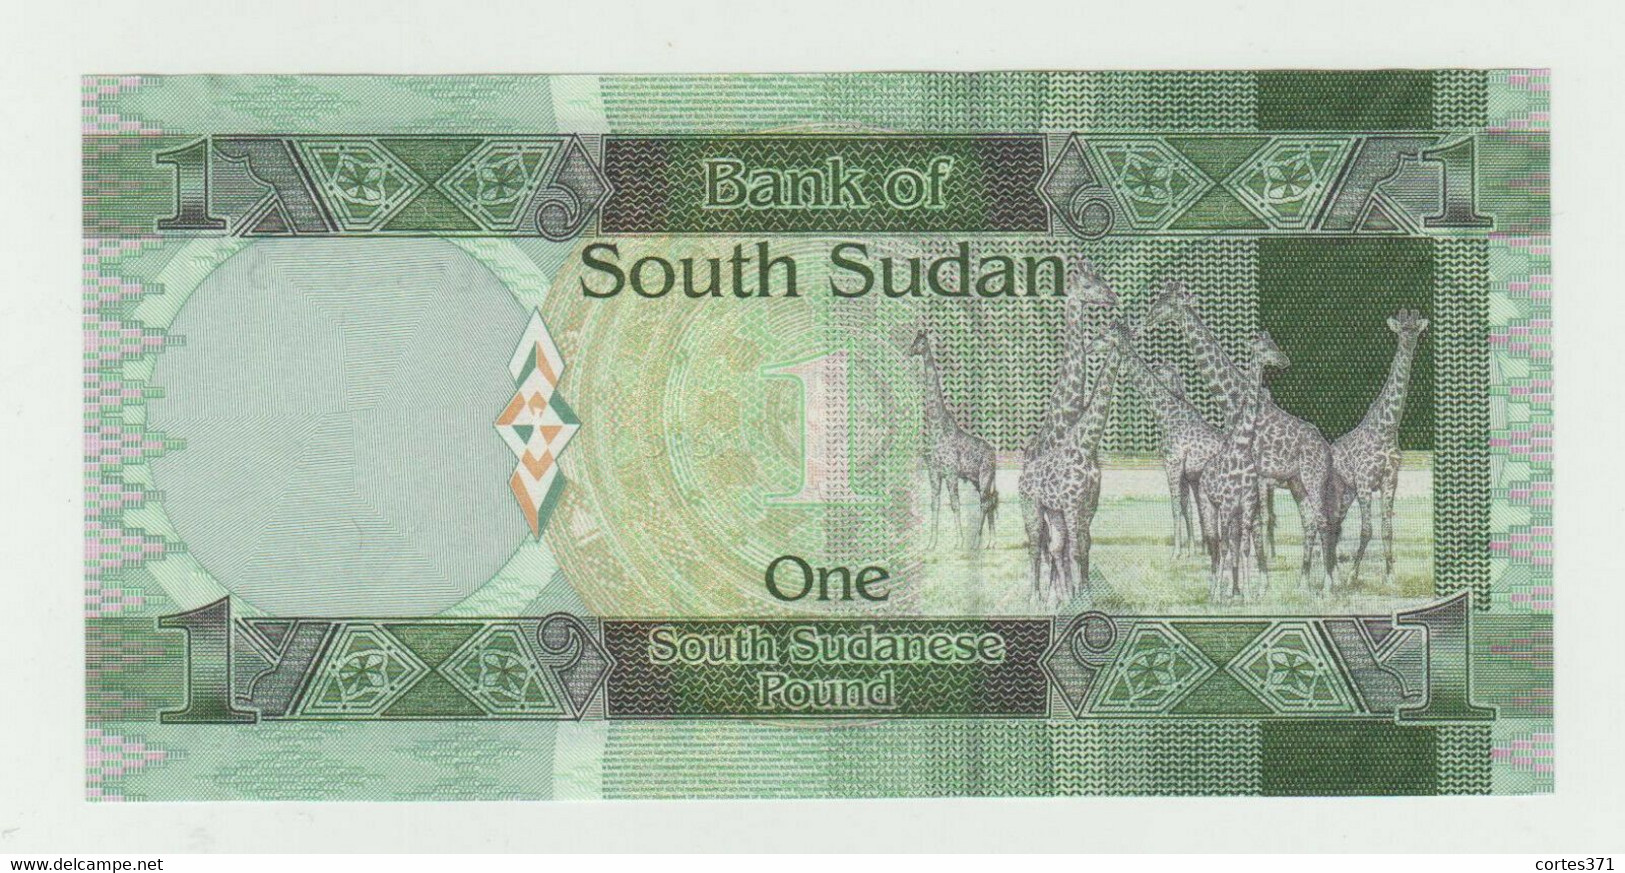 South Sudan 1 Pound 2011 P-5 UNC - Sudán Del Sur